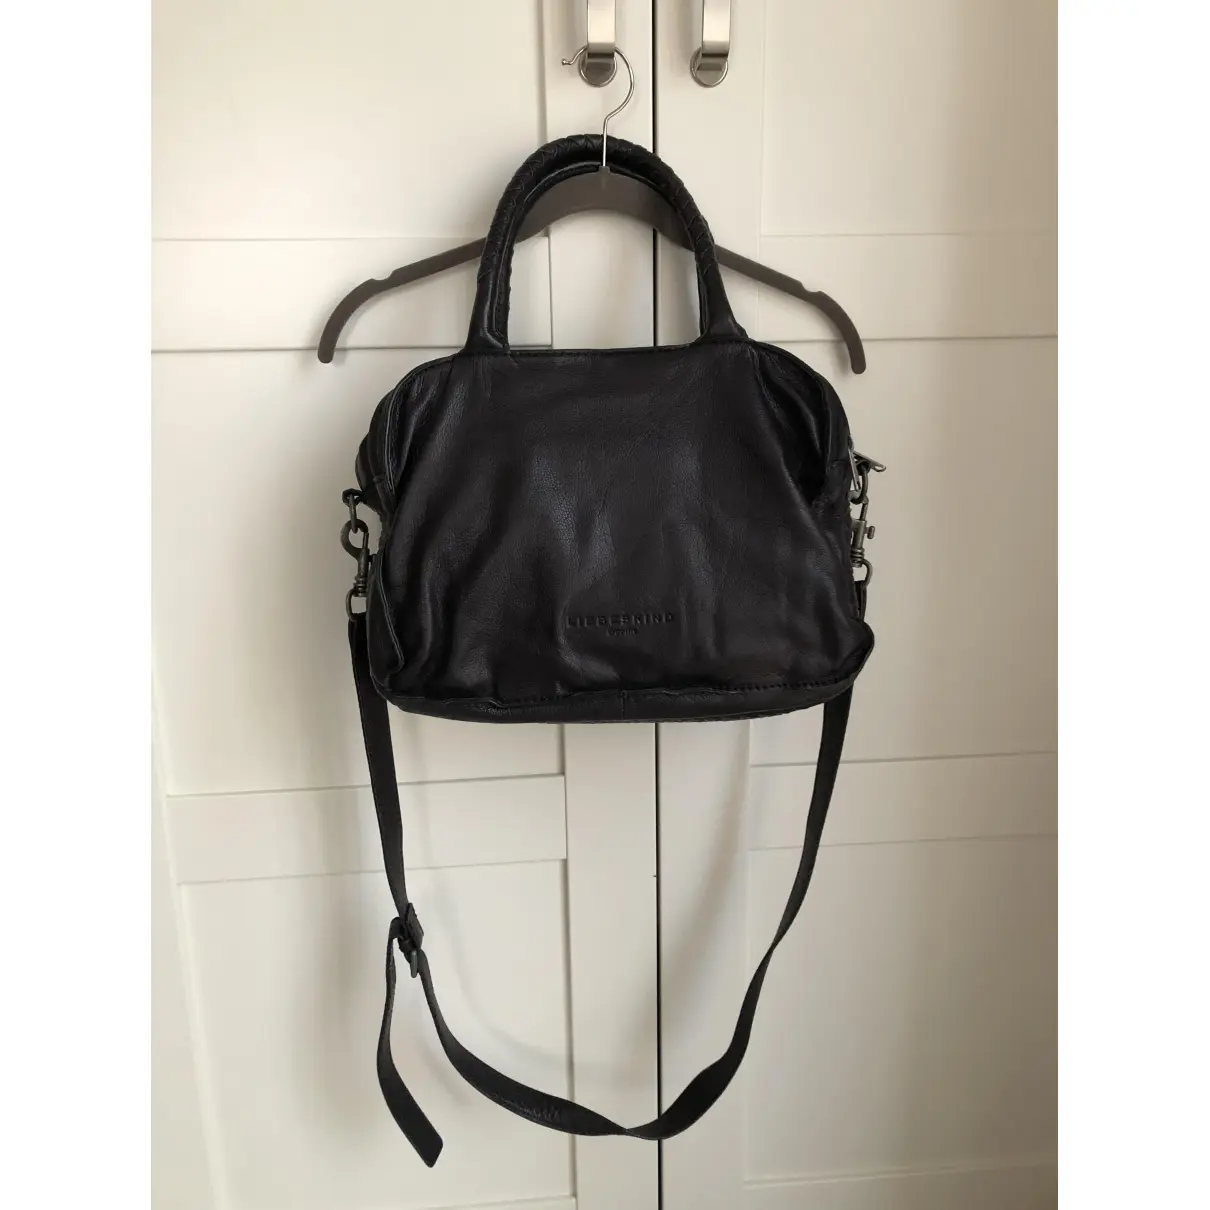 Leather handbag LIEBESKIND